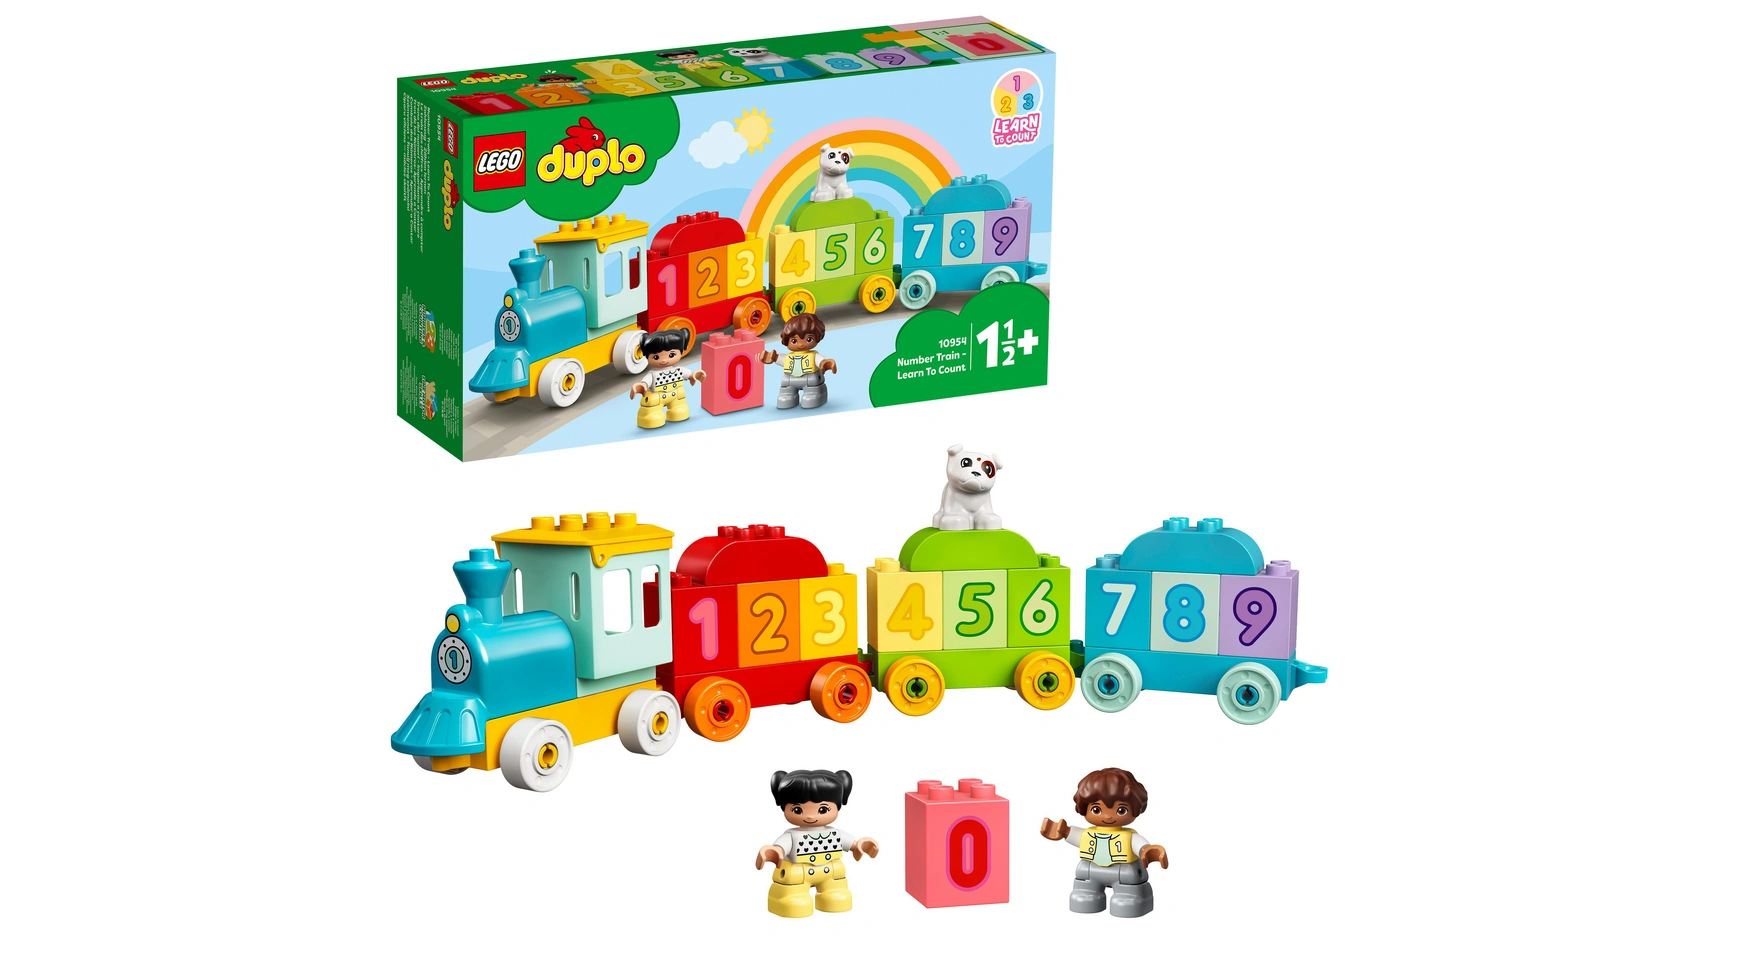 Lego DUPLO Цифровой поезд Учимся считать, детская игрушка, поезд lego duplo товарный поезд